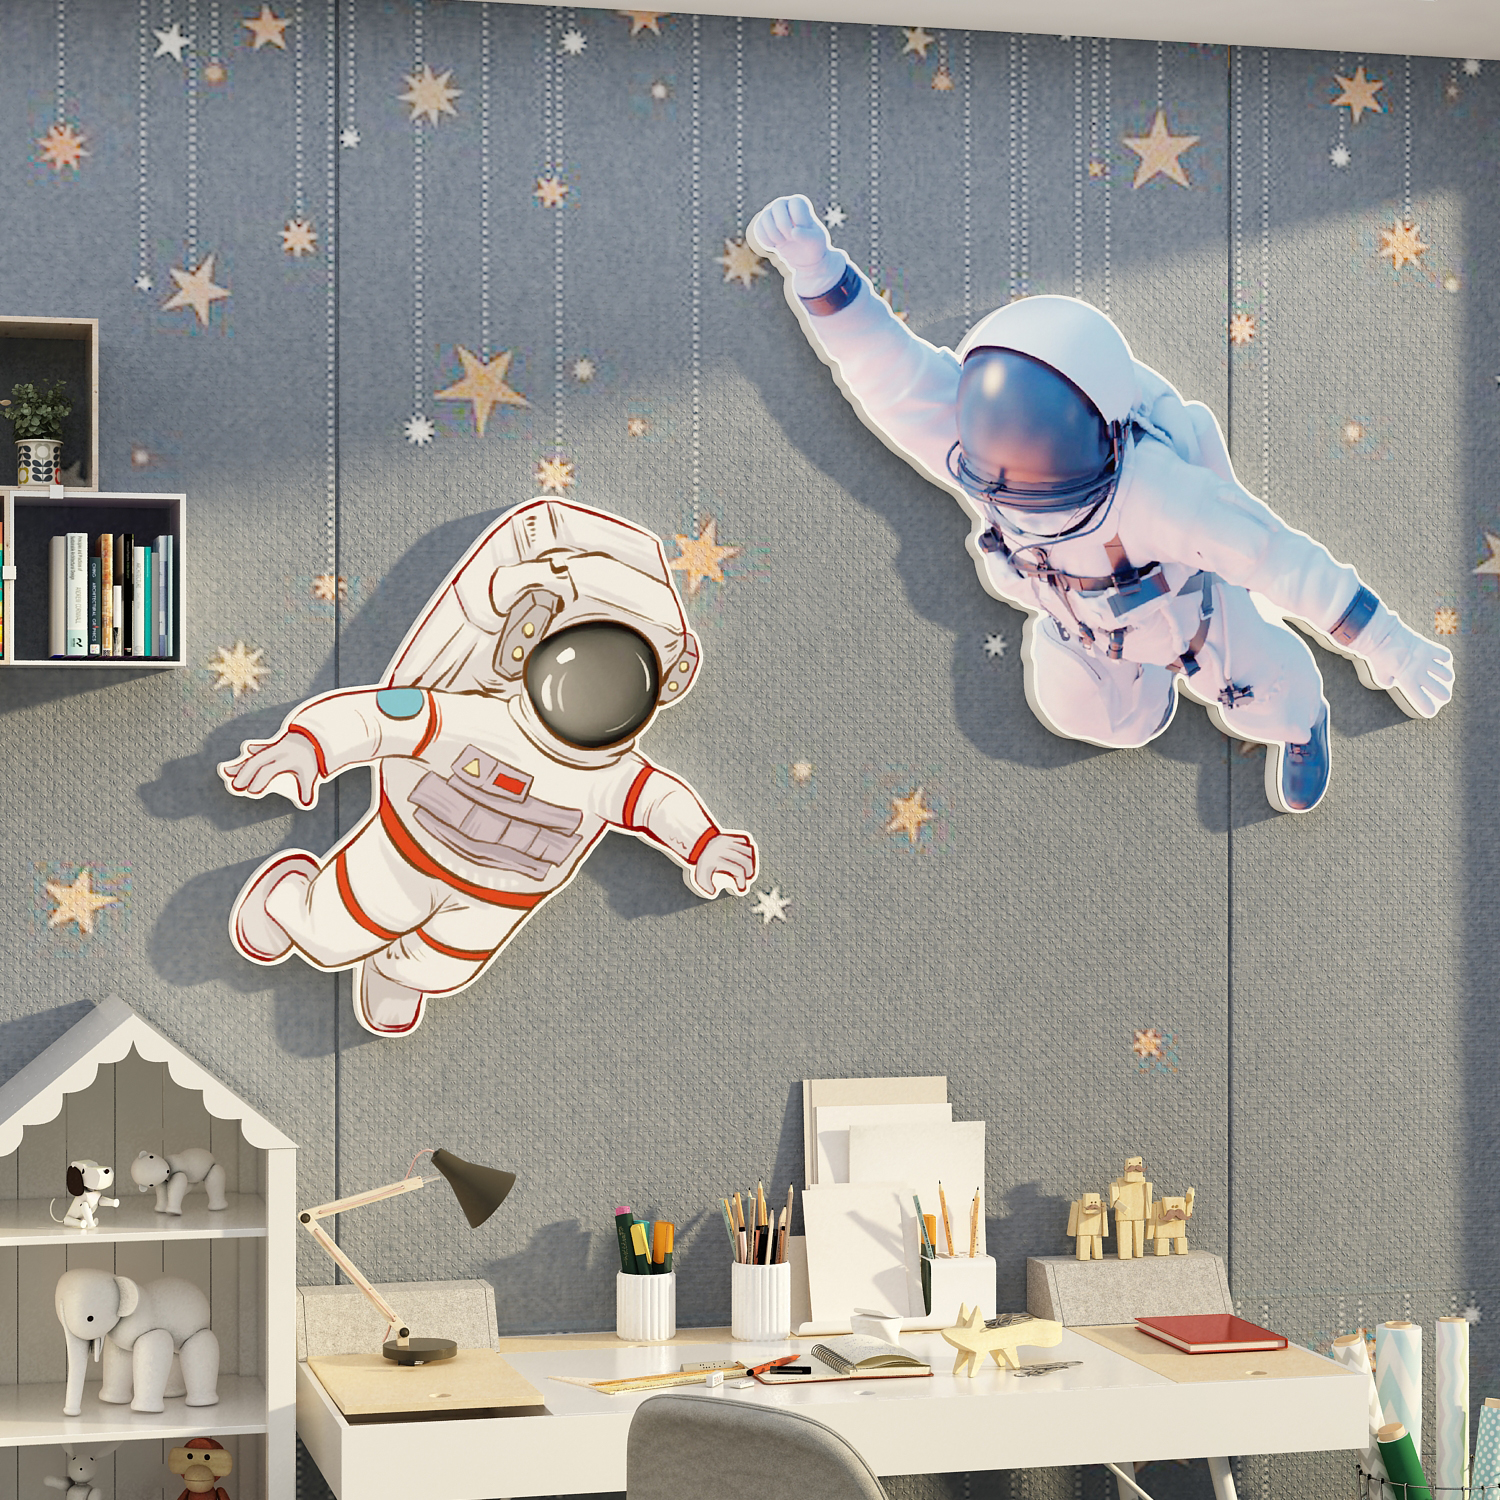 太空人宇航员星球环创主题儿童房间布置墙面装饰壁画男孩卧室贴纸 - 图2